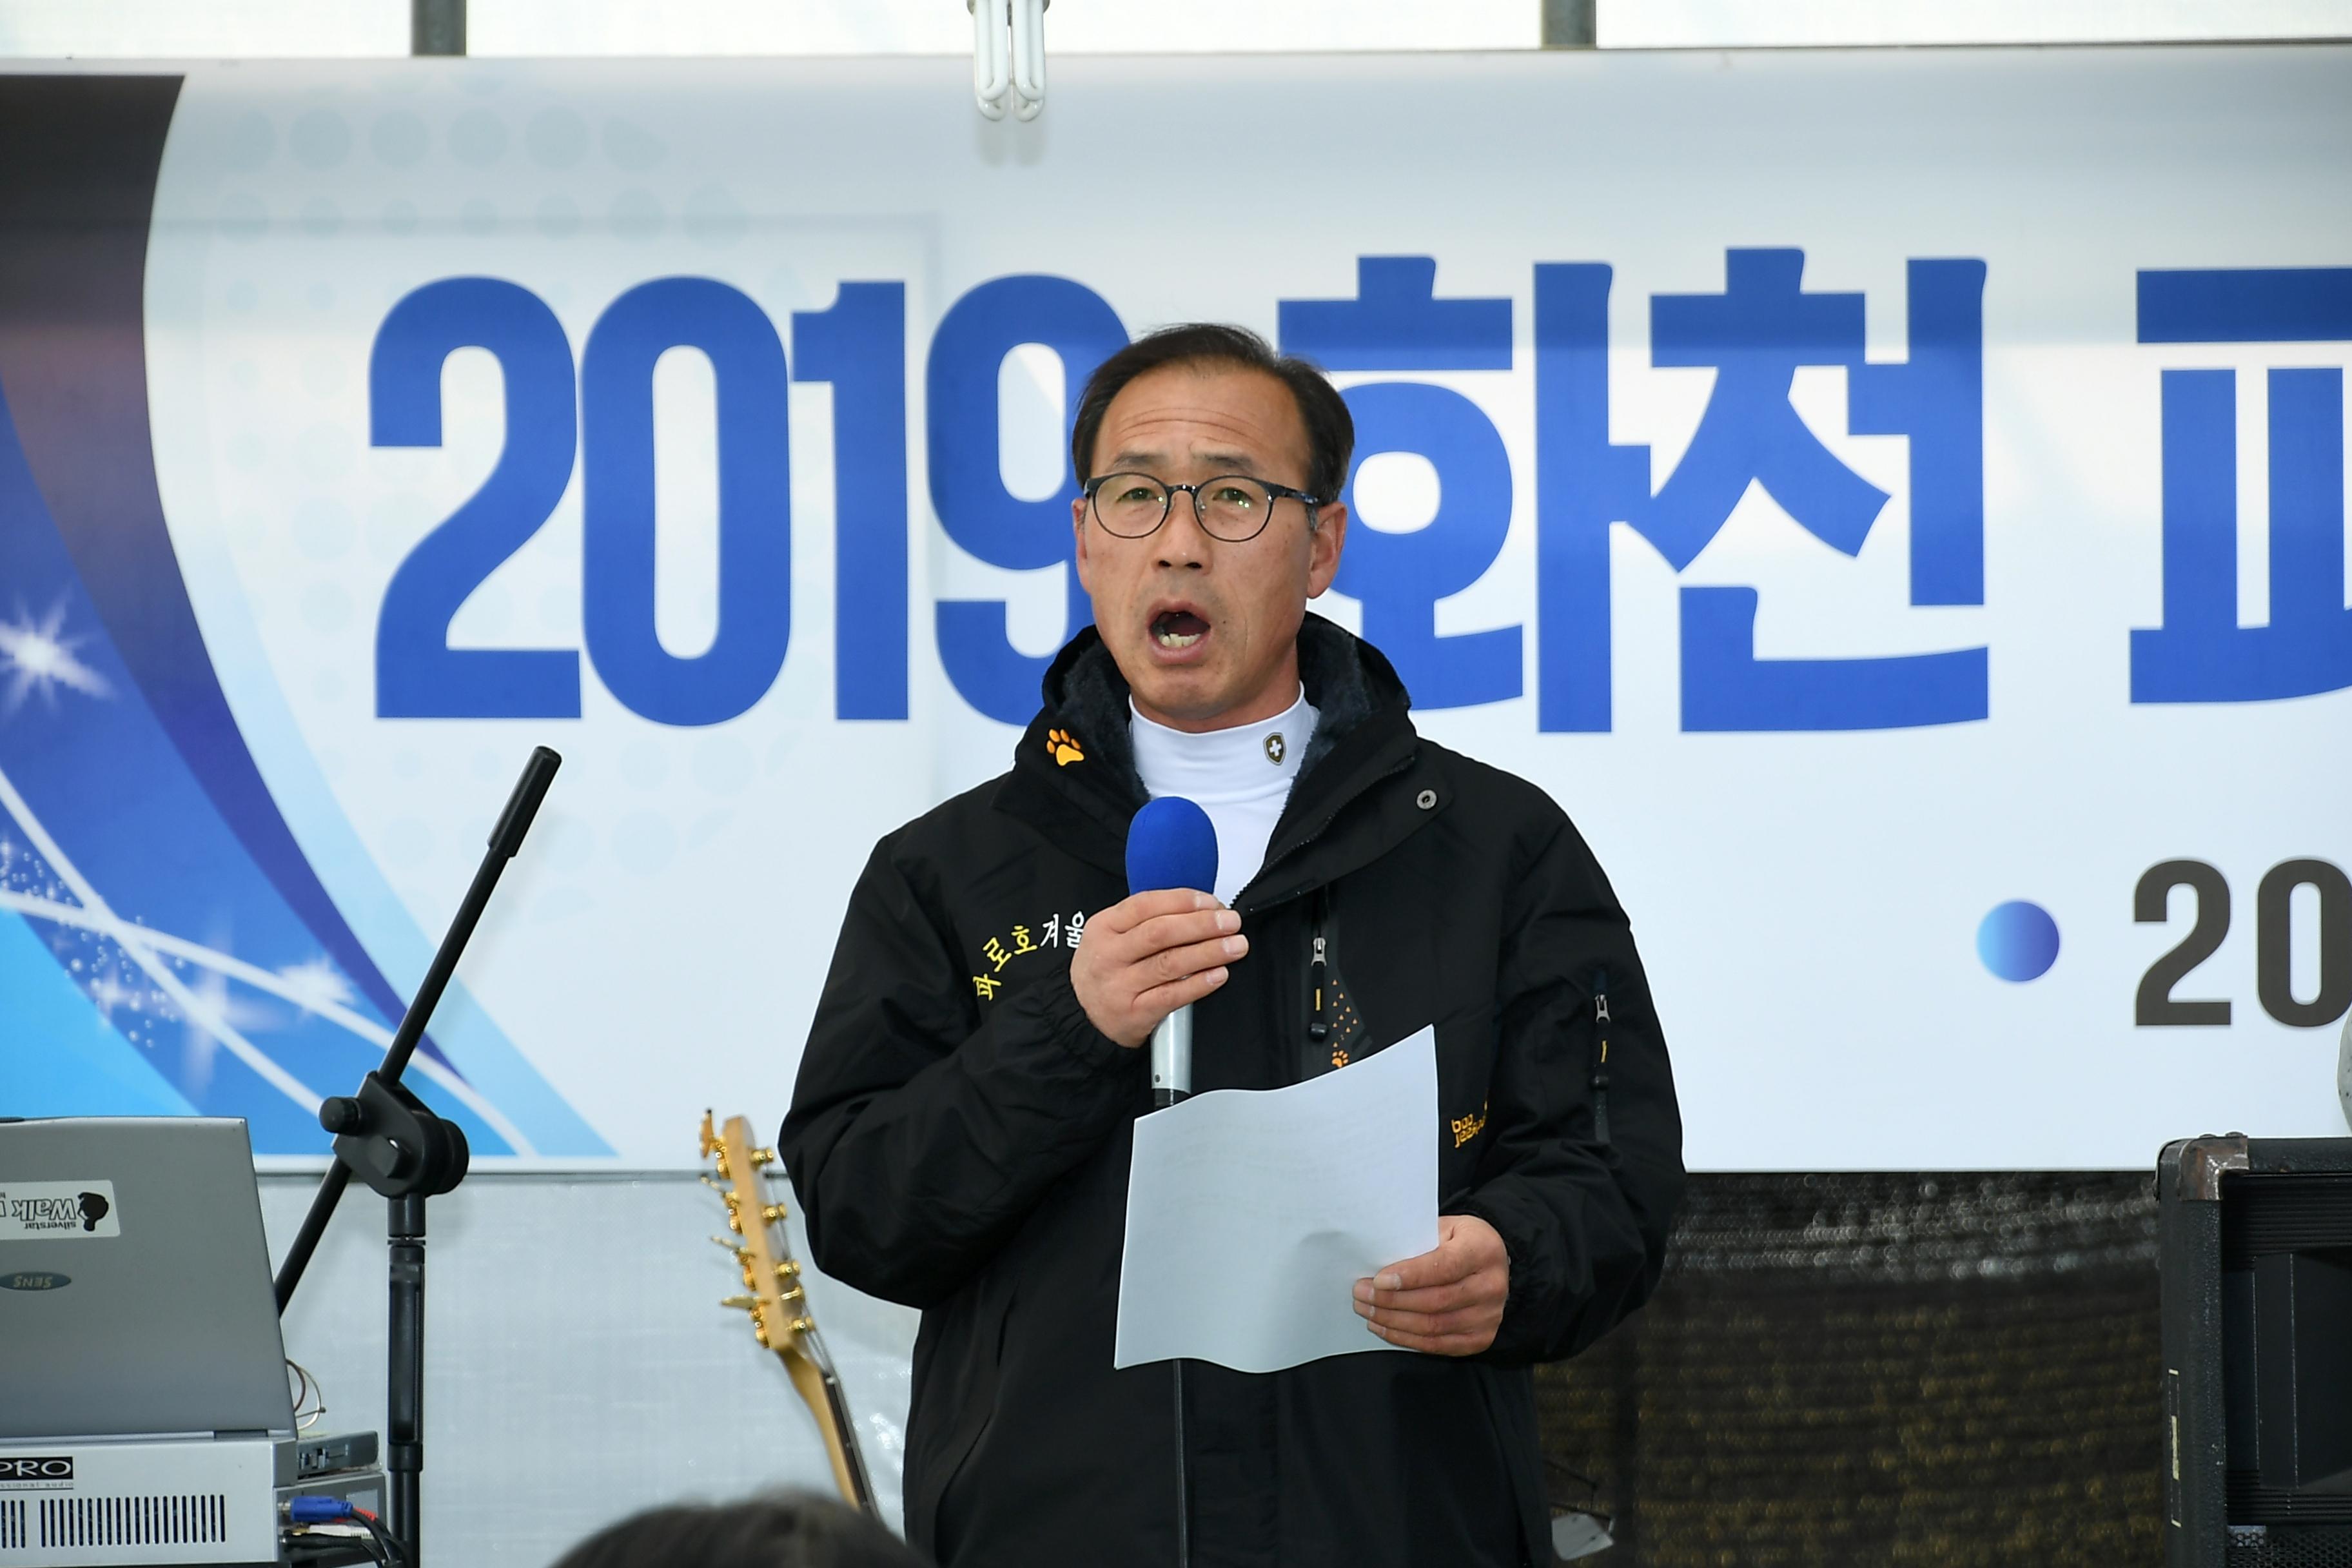 2019 화천파로호 축제 개막식 의 사진